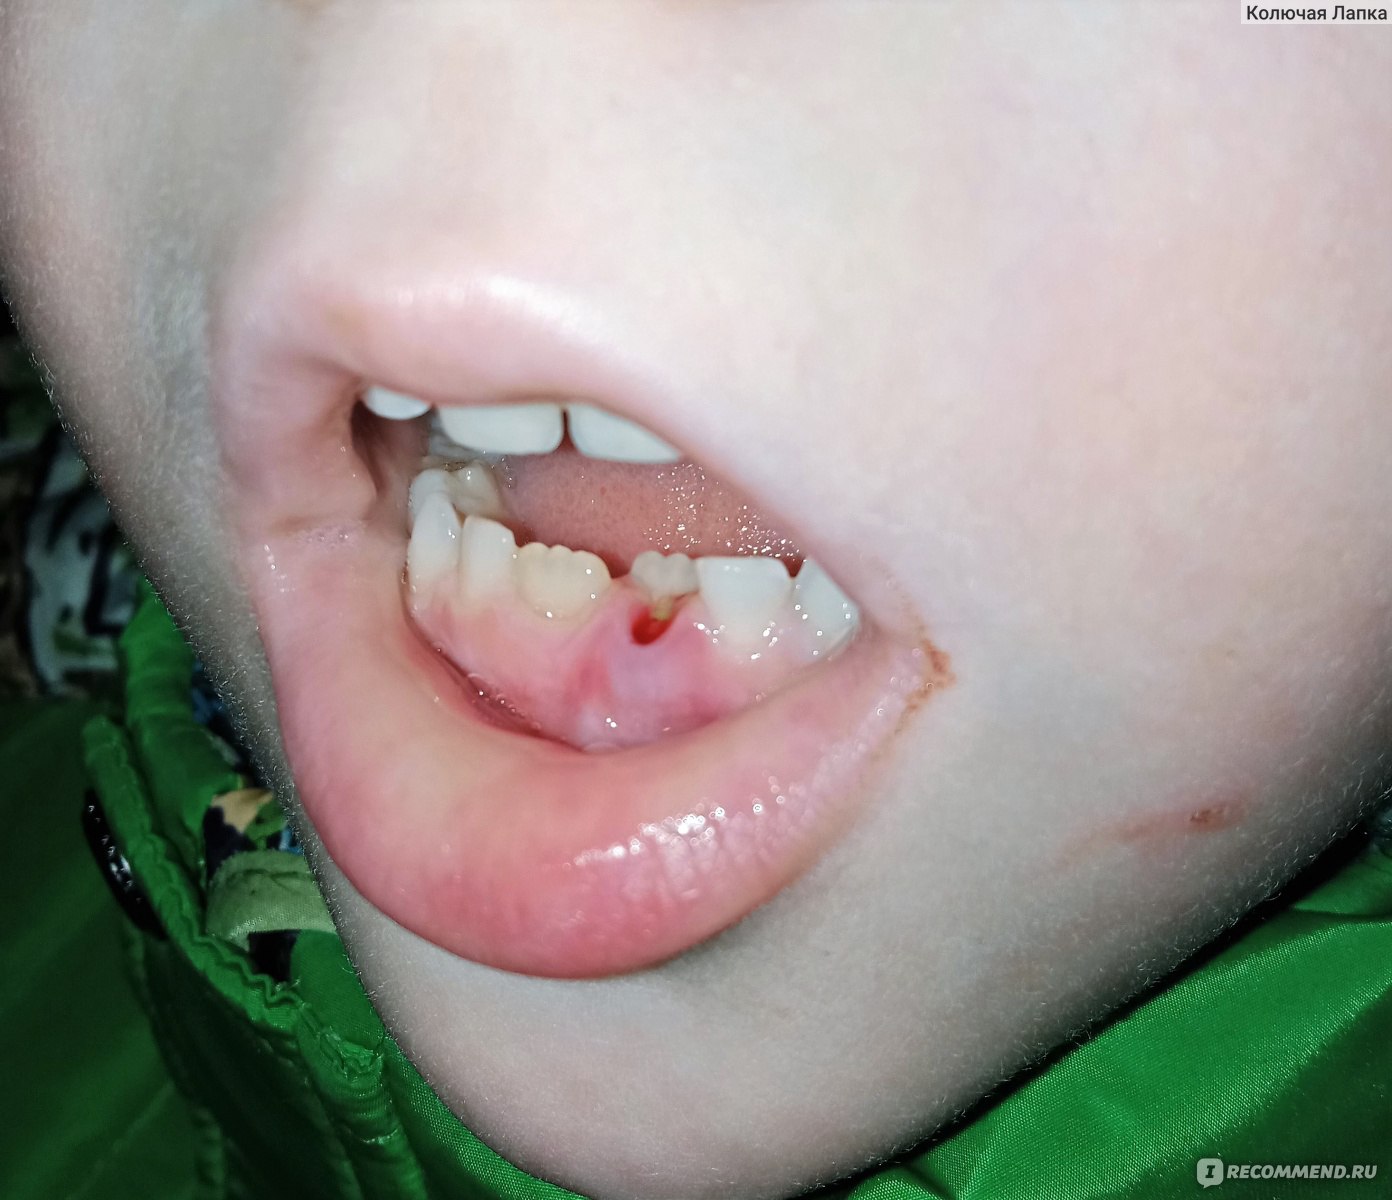 Сверхкомплектные зубы - причины, симптомы, диагностика